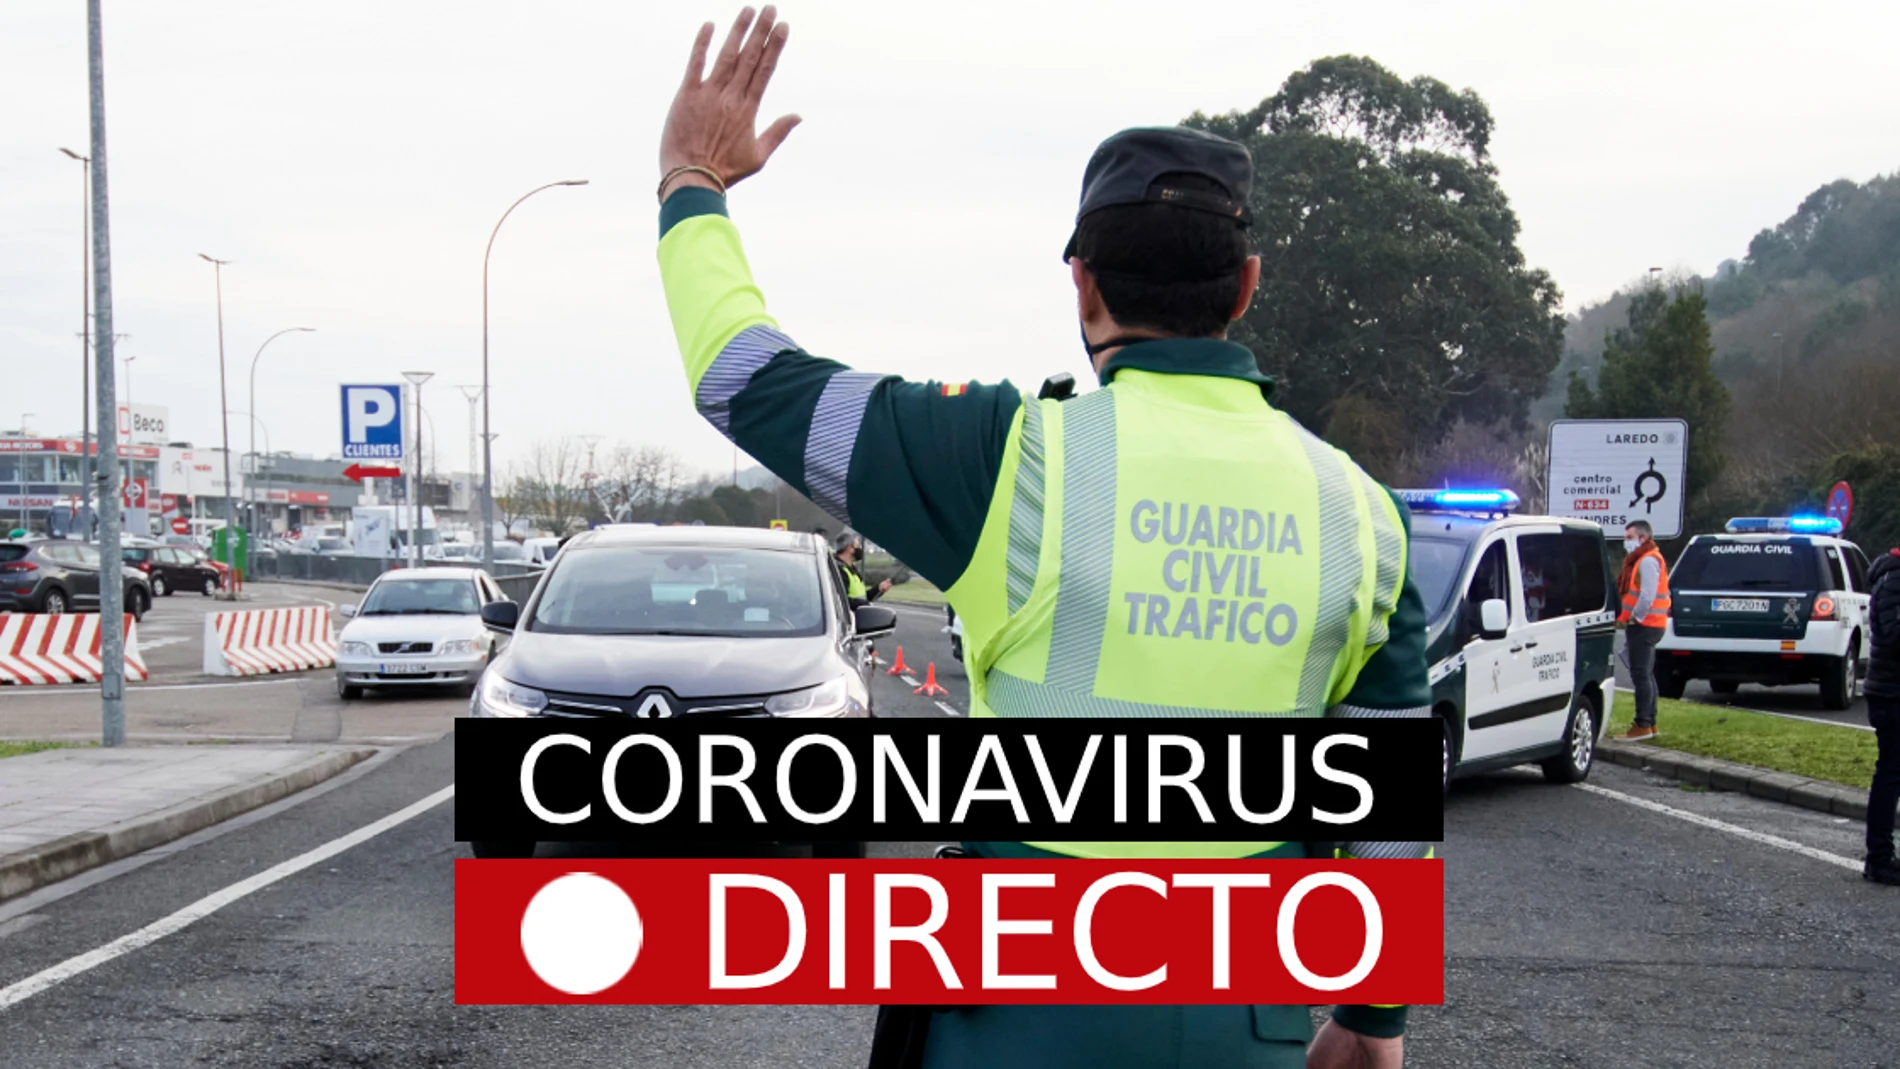 Nuevas restricciones por COVID-19, hoy | Confinamiento en zonas básicas de salud de Madrid y medidas en España por coronavirus, en directo